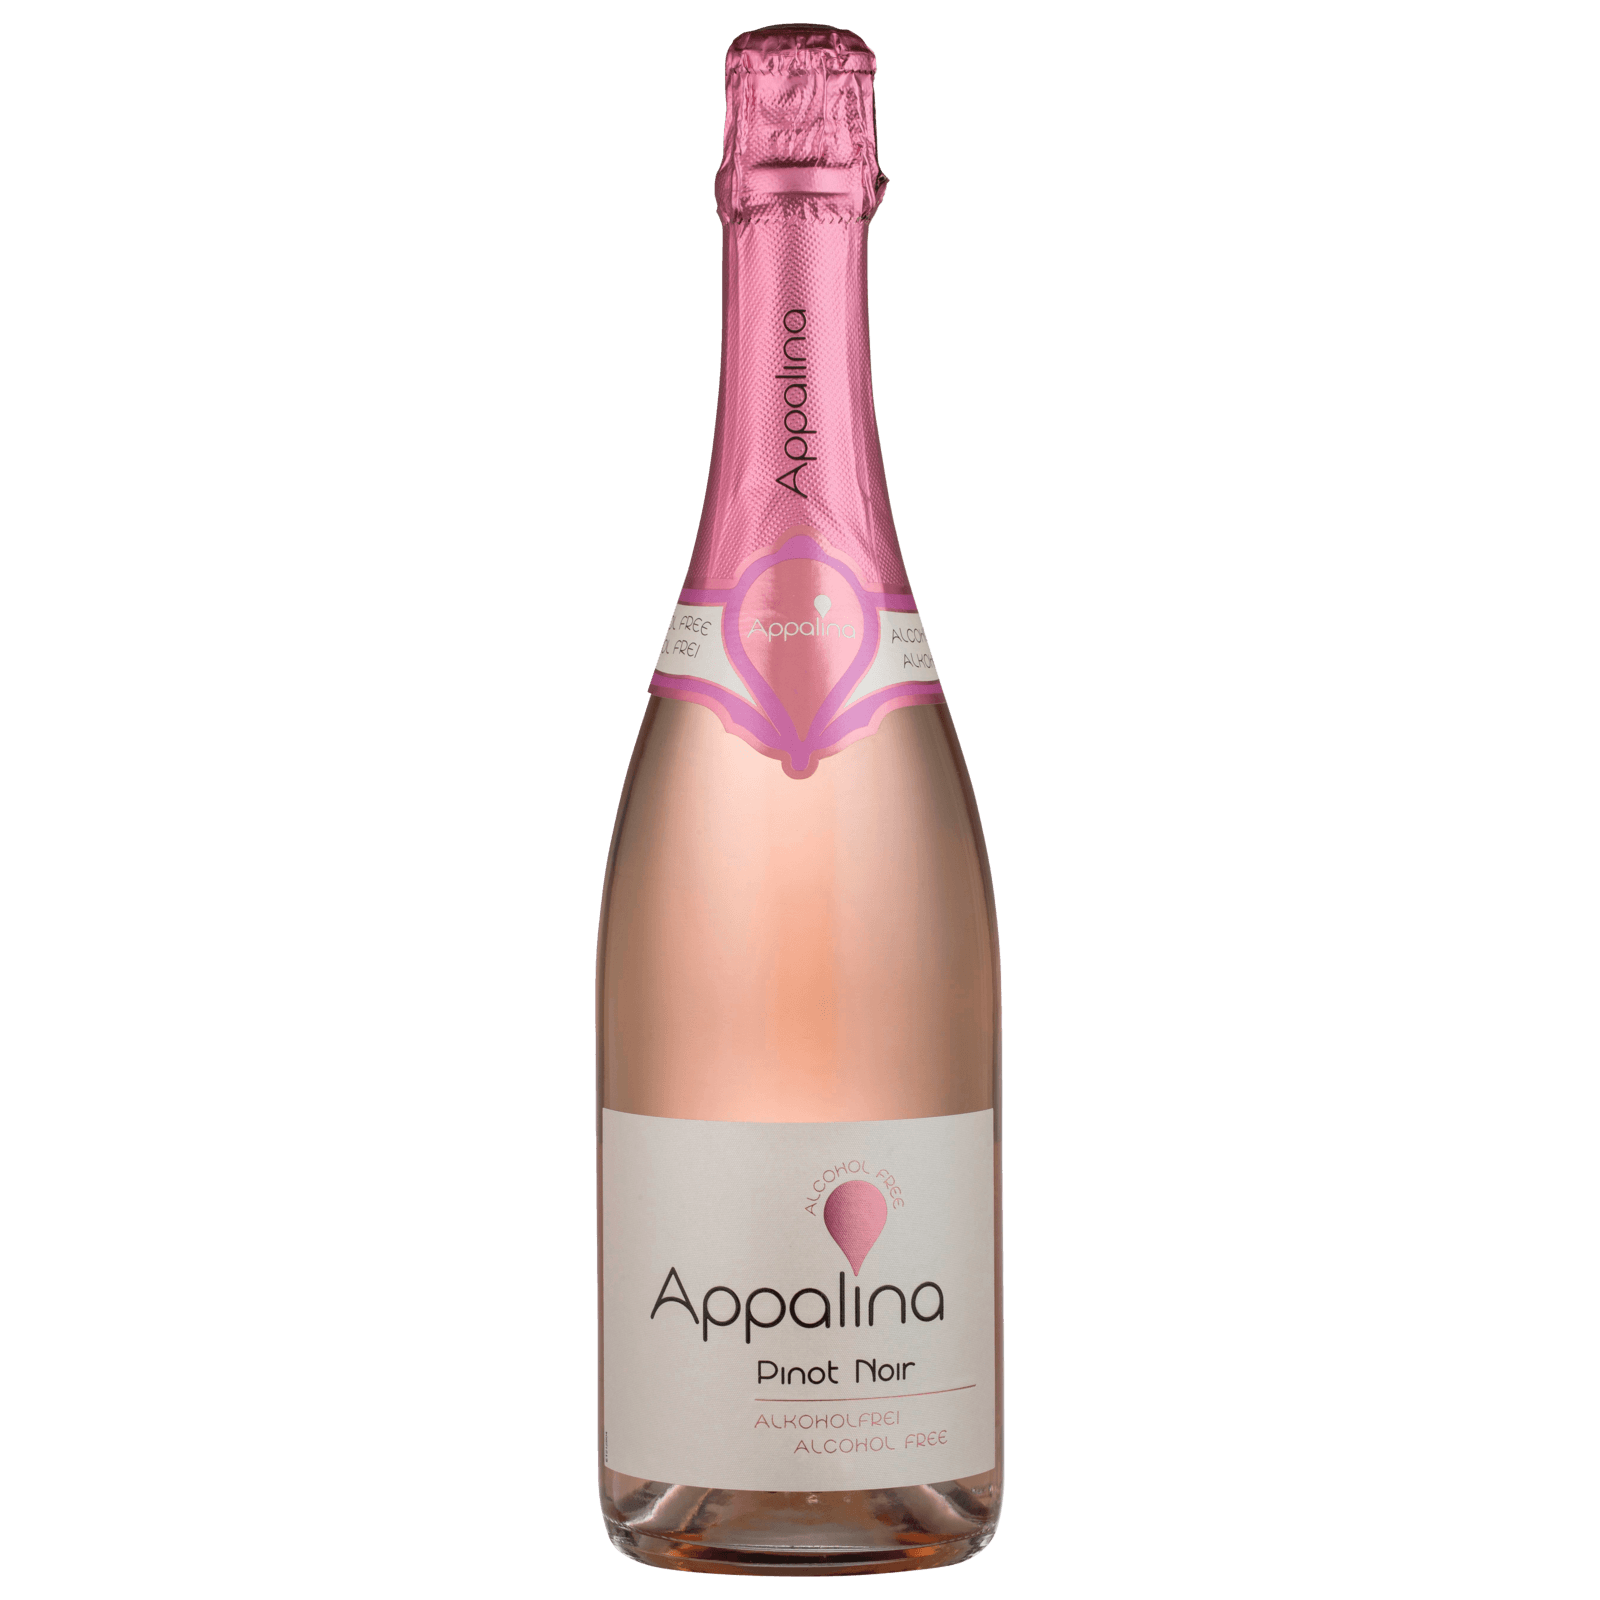 Appalina Pinot Noir alkoholfrei Roséwein 0,75l bei REWE online bestellen! | Champagner & Sekt